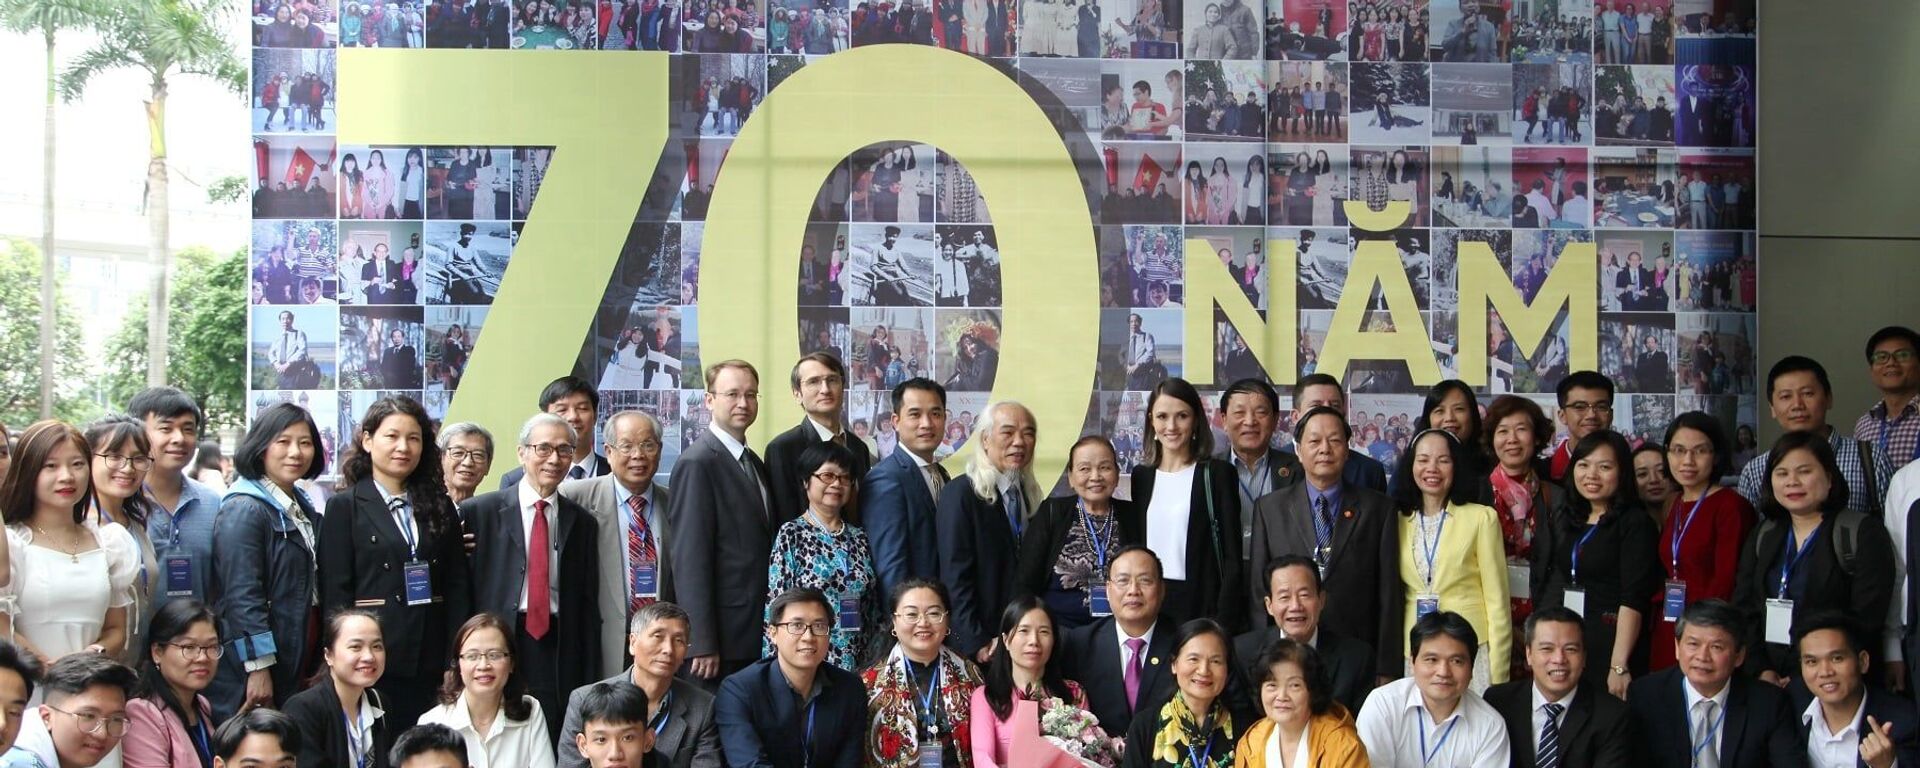 Các đại biểu tham dự Hội thảo quốc tế trực tuyến “Kỷ niệm 70 năm Quan hệ Việt-Nga trong Khoa học và Giáo dục” tại Hà Nội. - Sputnik Việt Nam, 1920, 22.10.2020